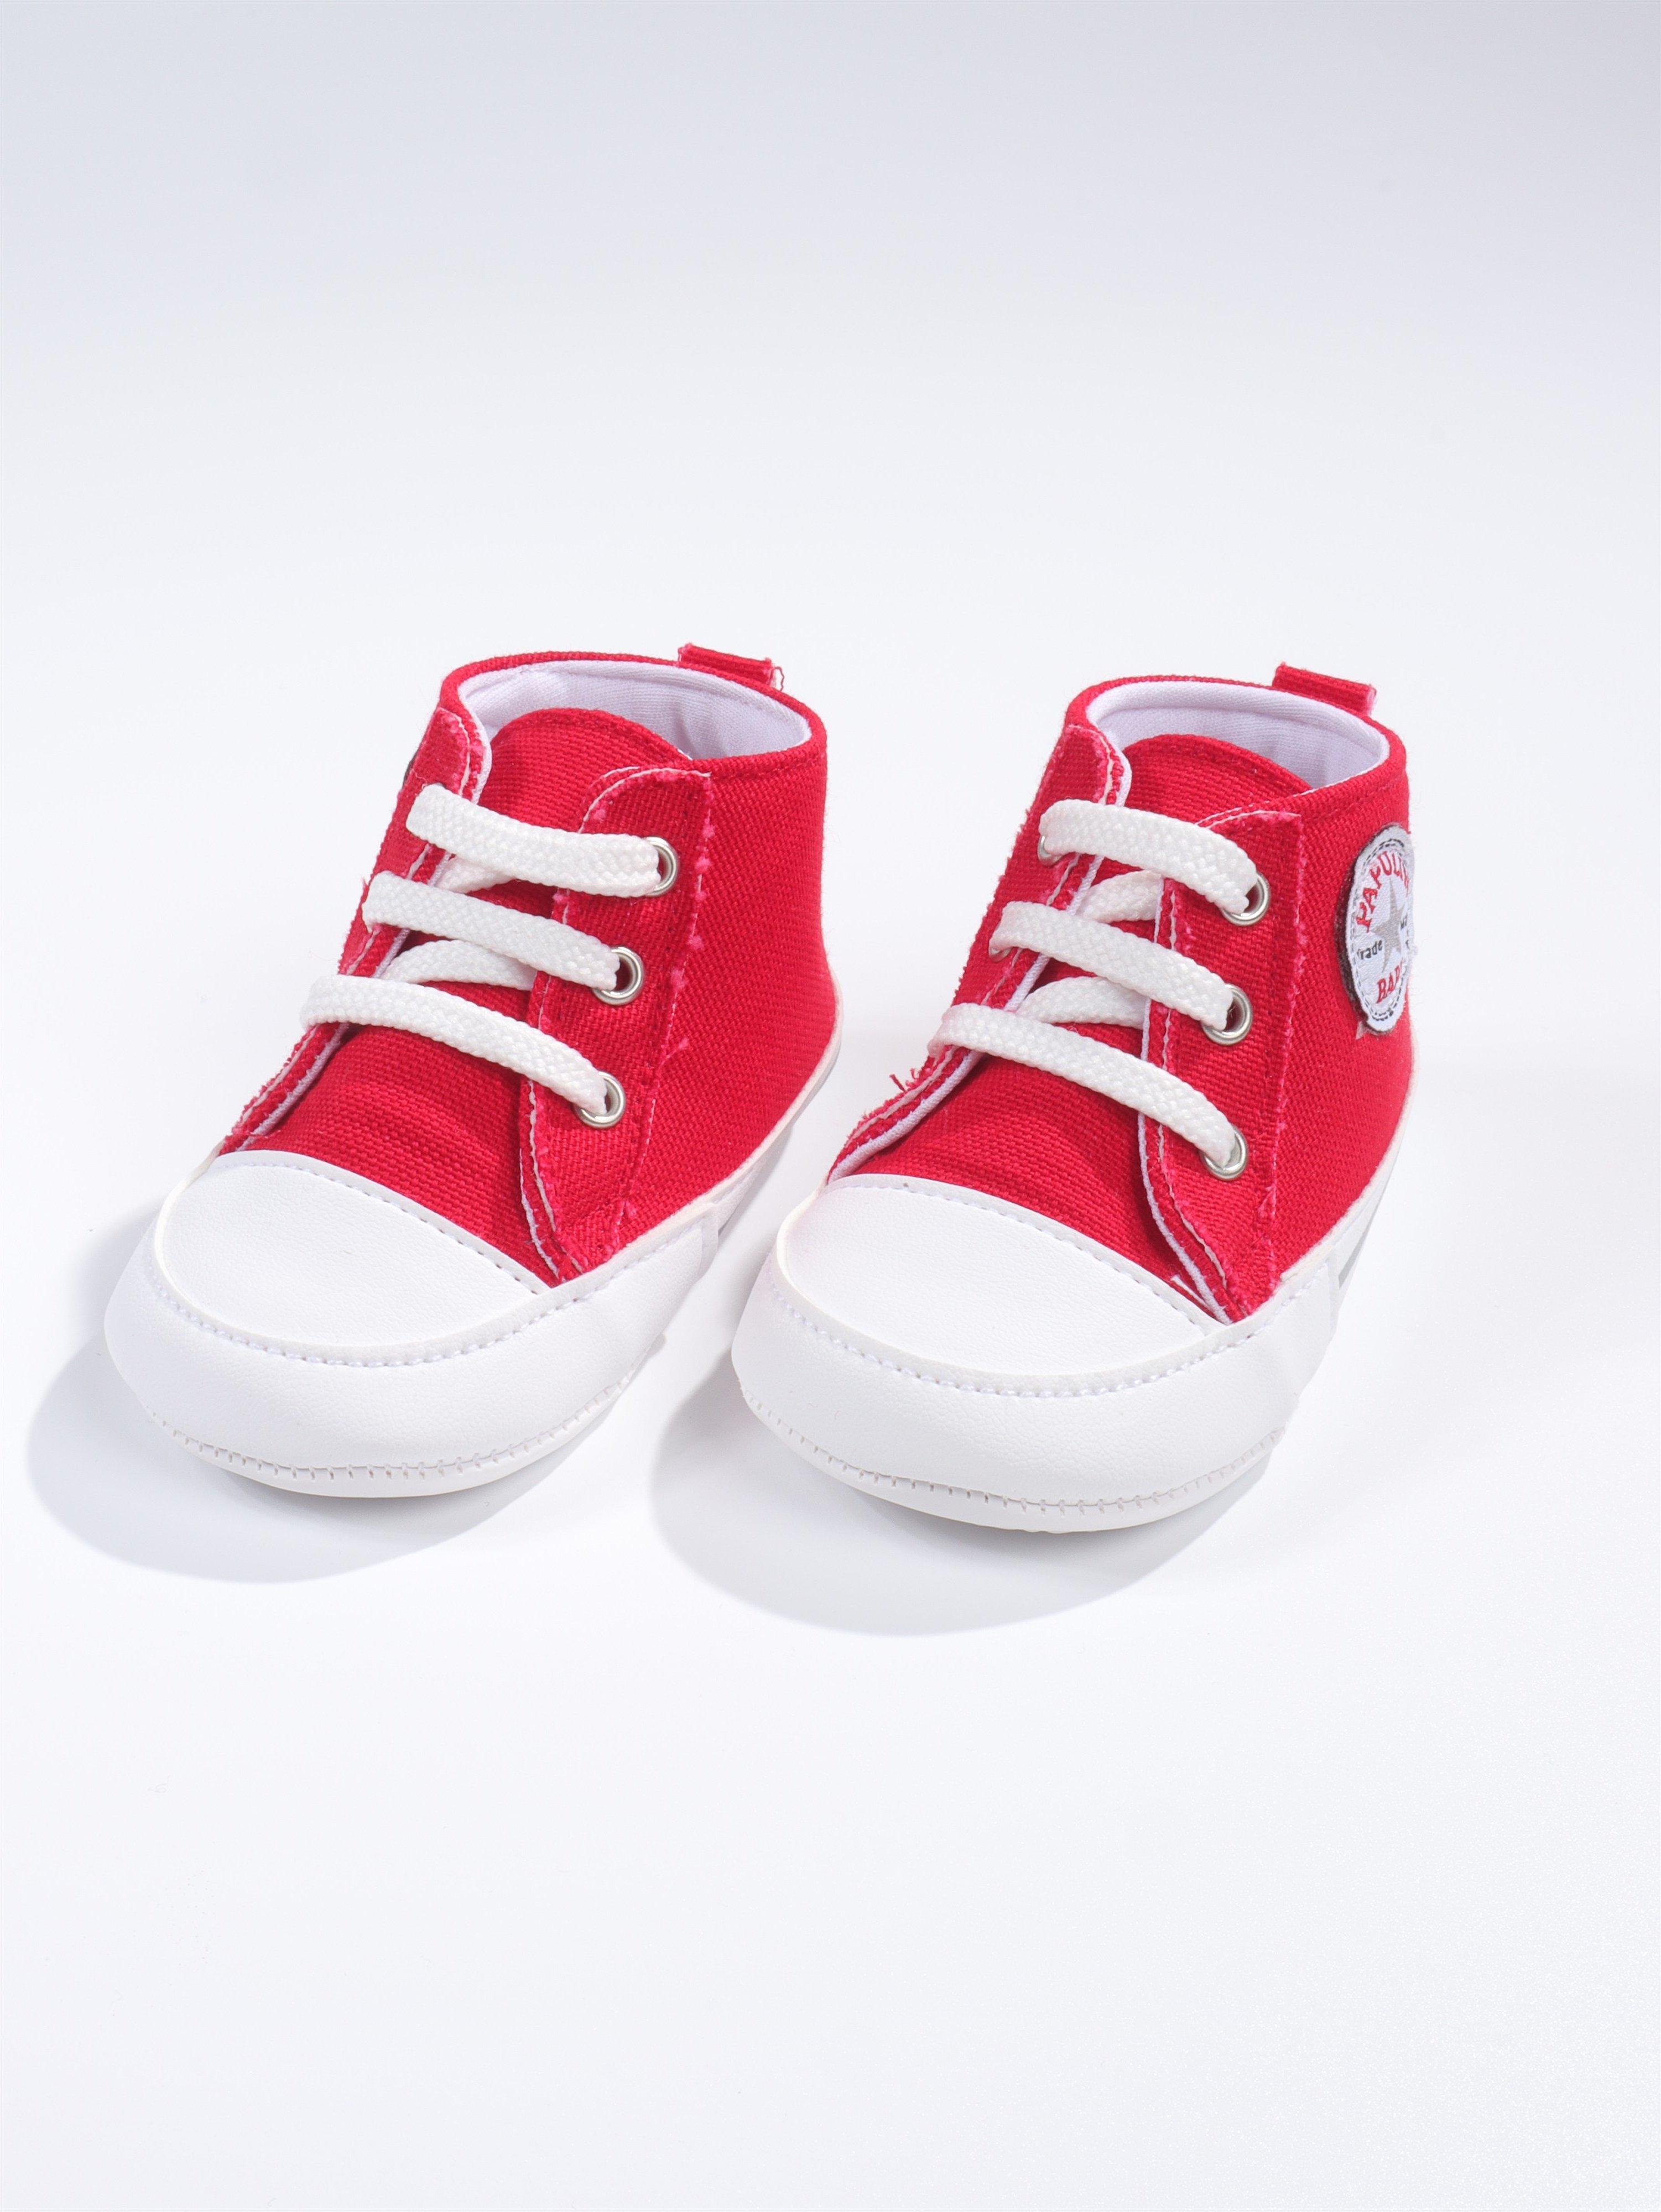 Unisex Bebek Ayakkabısı Kırmızı | Bebek Hediyesi | 0-12 AY - YHH Kids